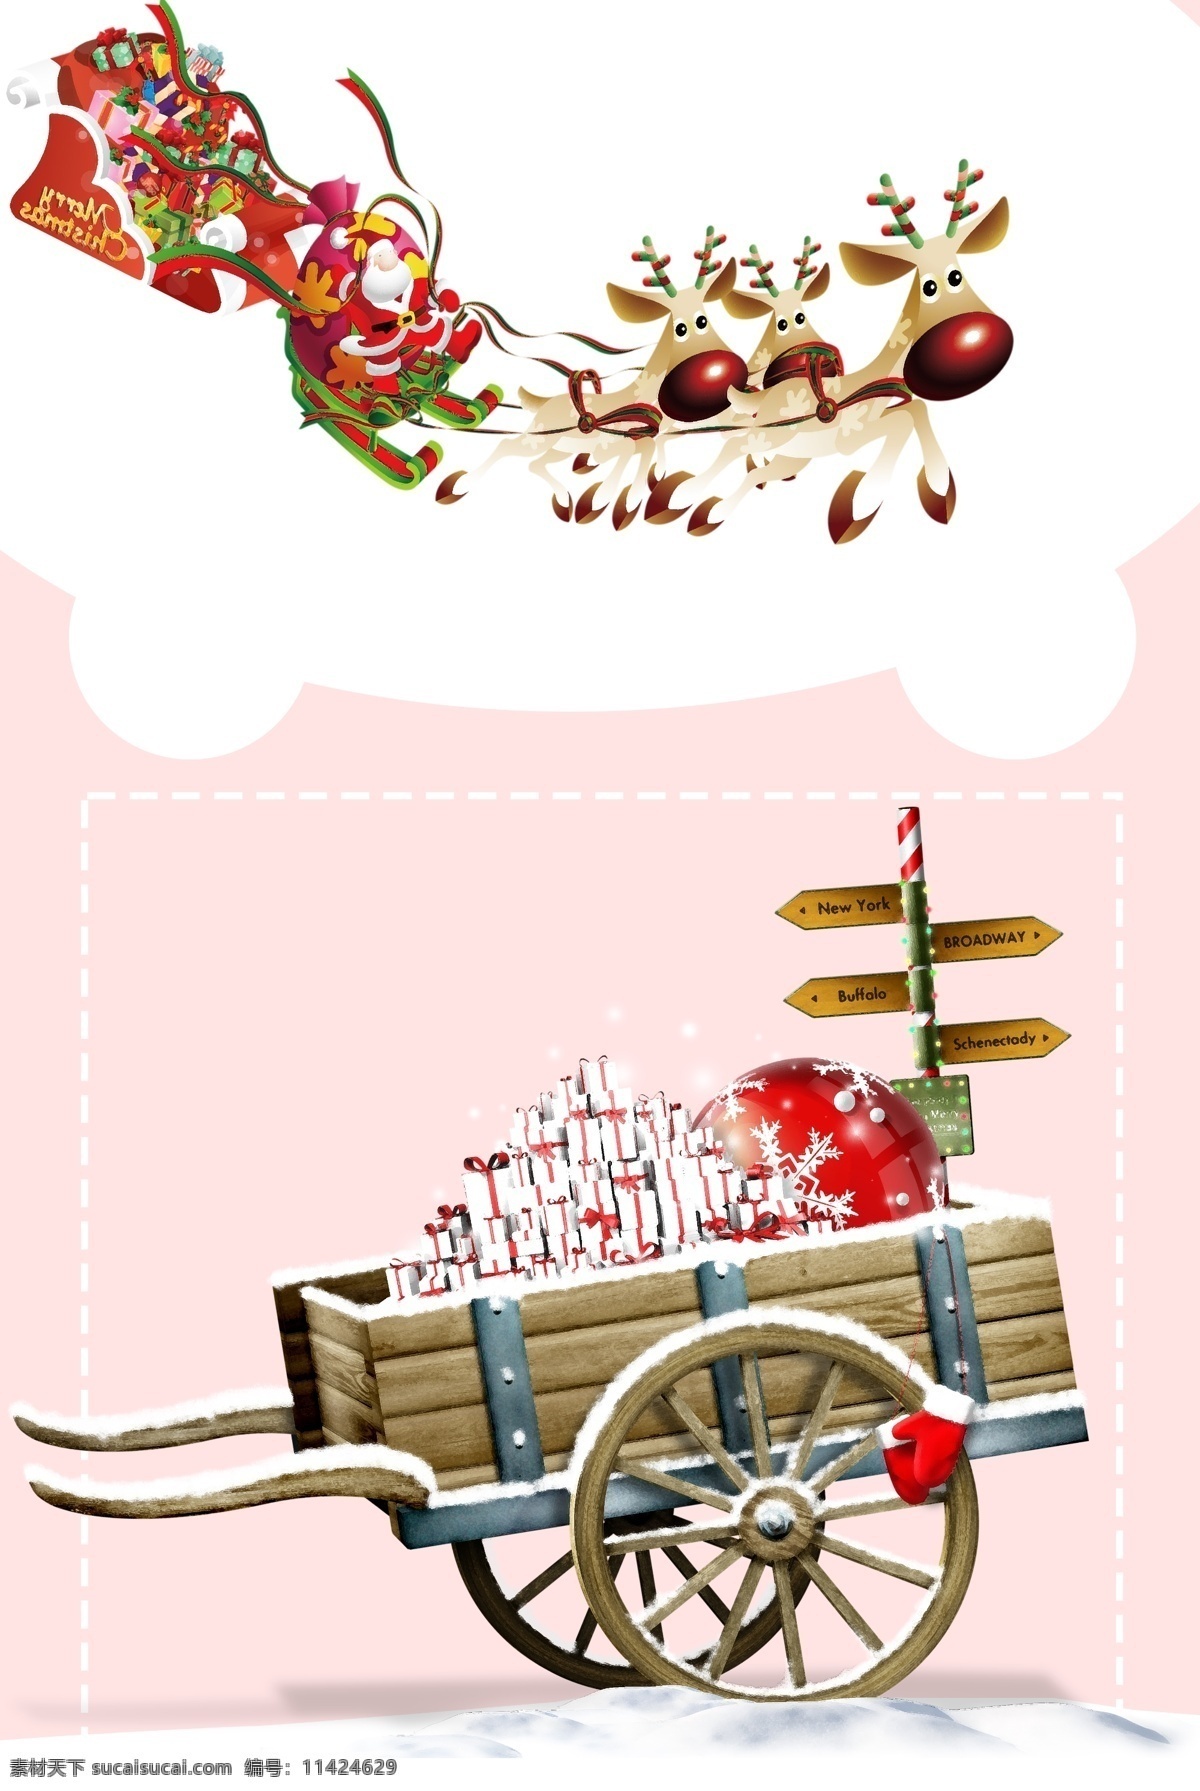 粉色 手绘 卡通 圣诞节 背景 图 唯美 可爱 礼盒 雪花 圣诞老人 扁平 雪人 袜子 广告背景